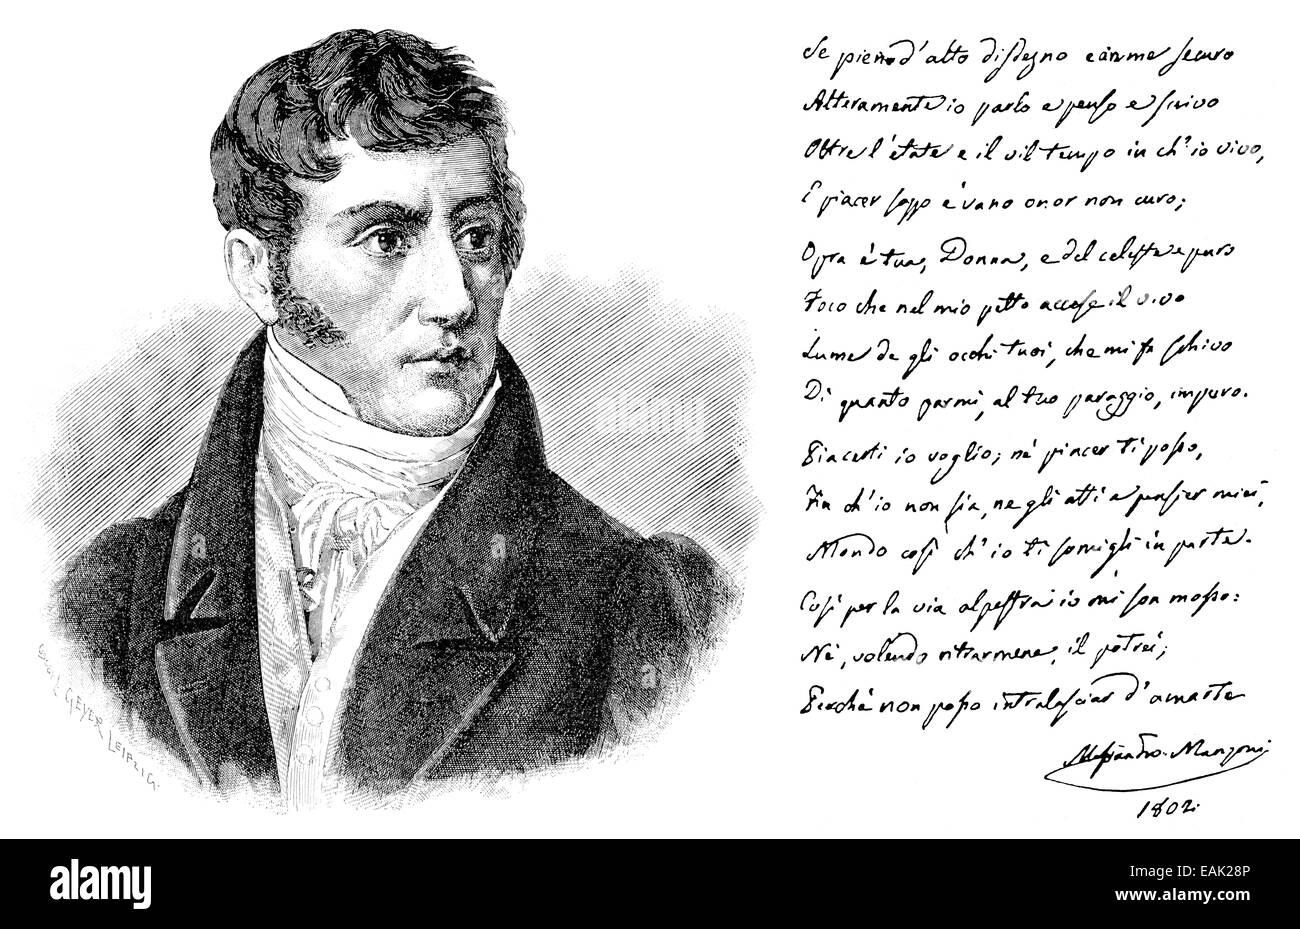 handschriftliche Widmung und Porträt von Alessandro Francesco Tommaso Manzoni, 1785-1873, ein italienischer Dichter und Schriftsteller, handschrif Stockfoto